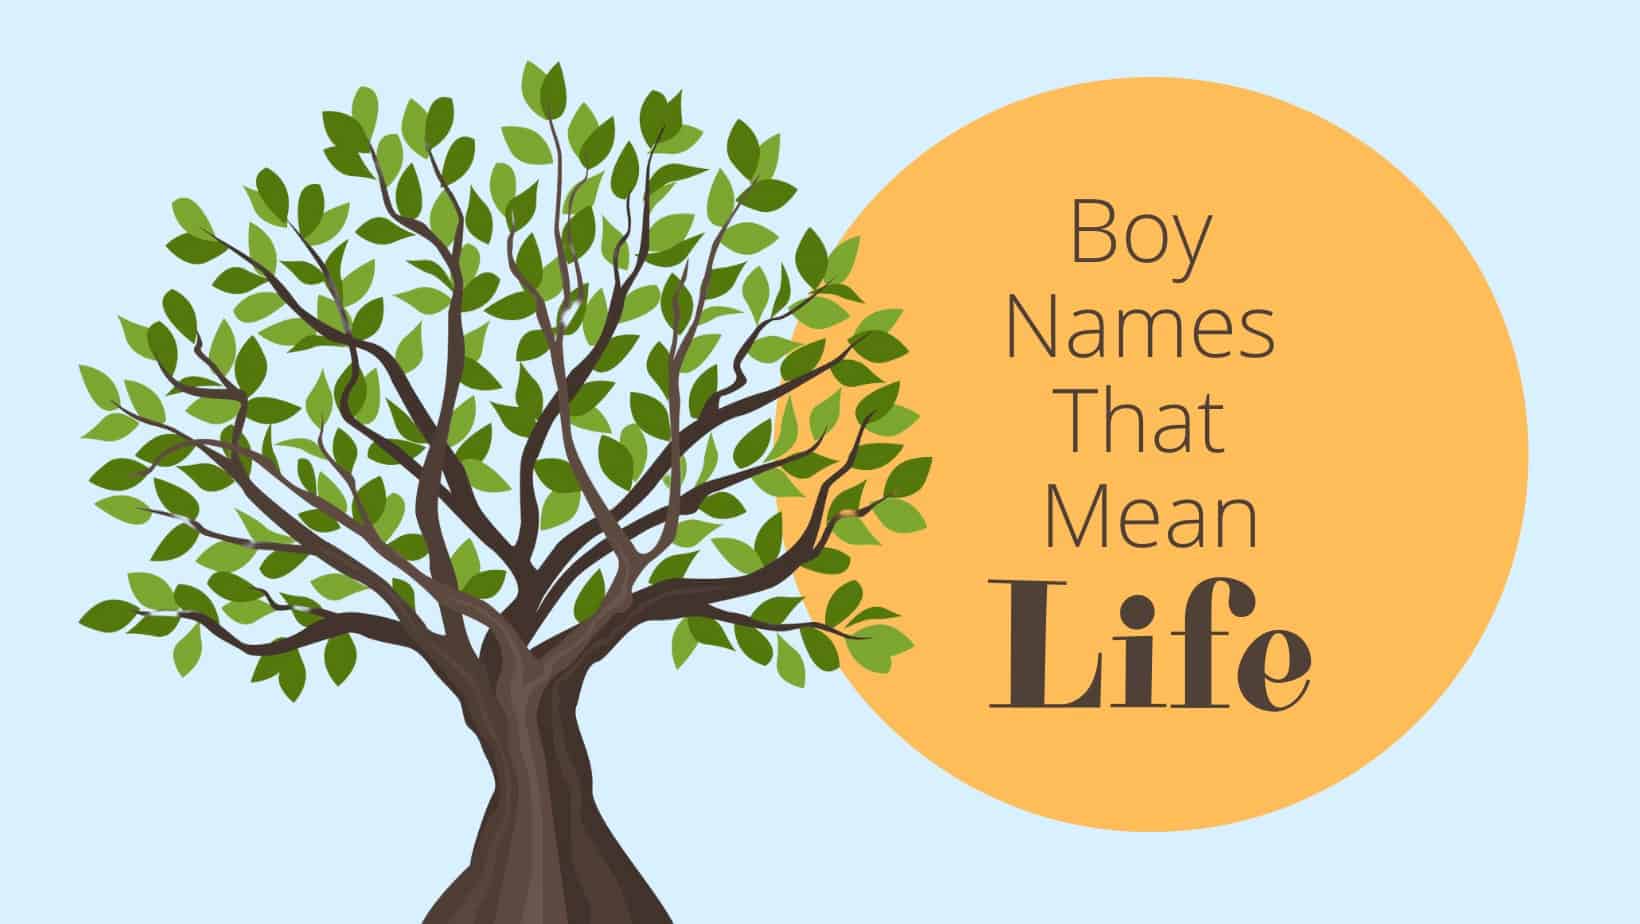 Boy Names That Mean Life